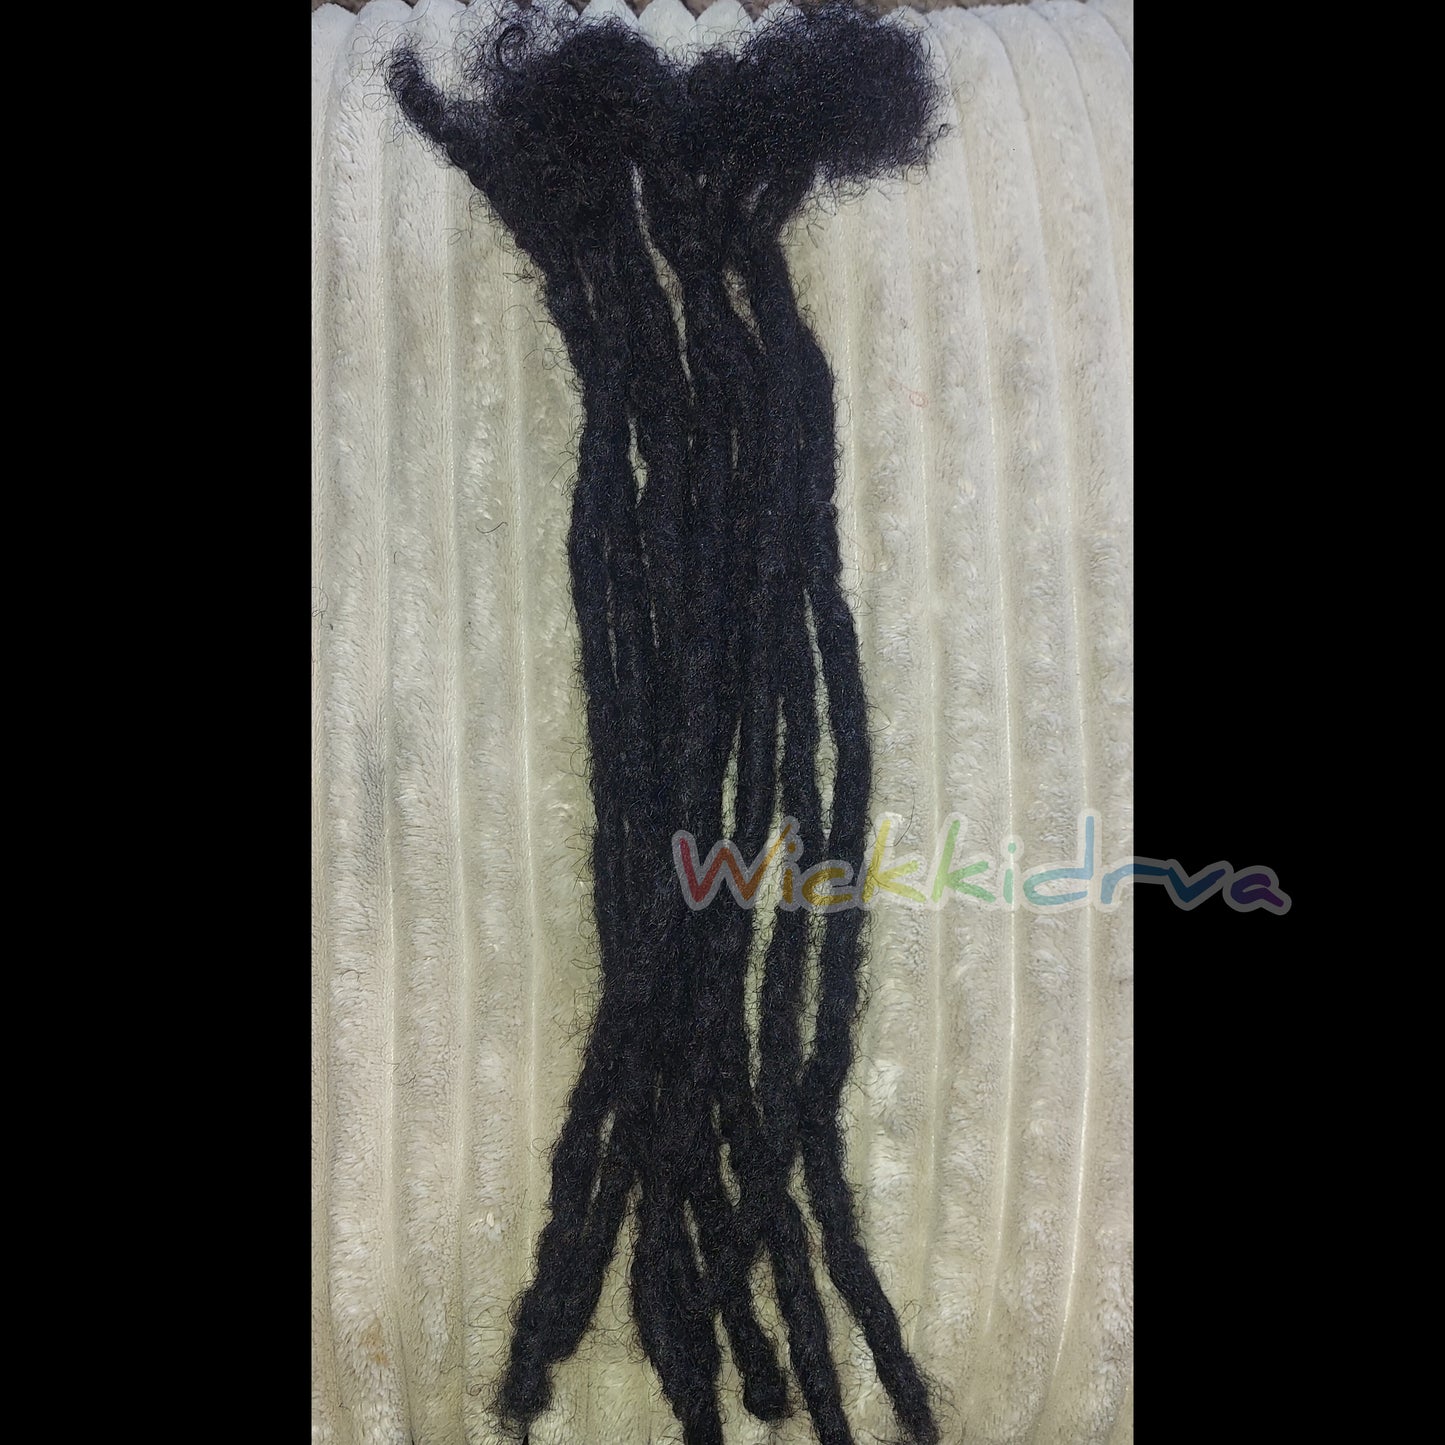 Extensiones Loc de cabello 100% humano hechas a mano de 16 pulgadas | mechakidrva